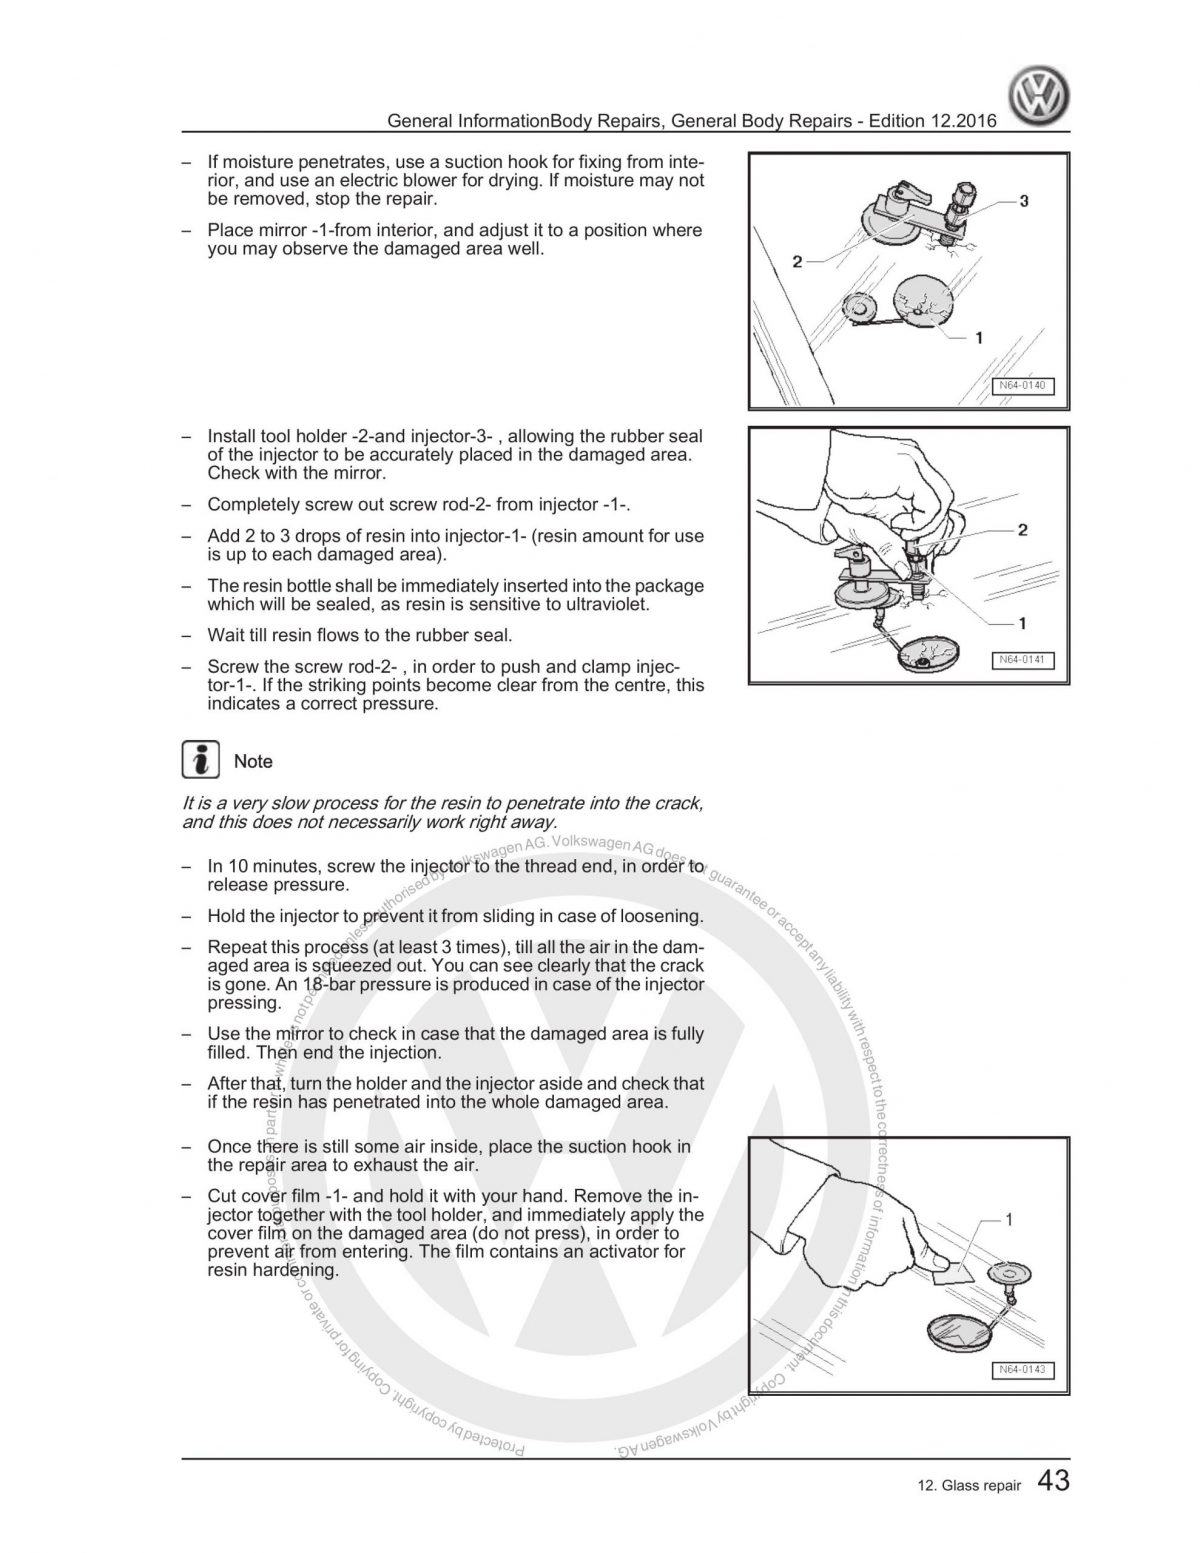 VW Transporter General Body Repairs Workshop Manual